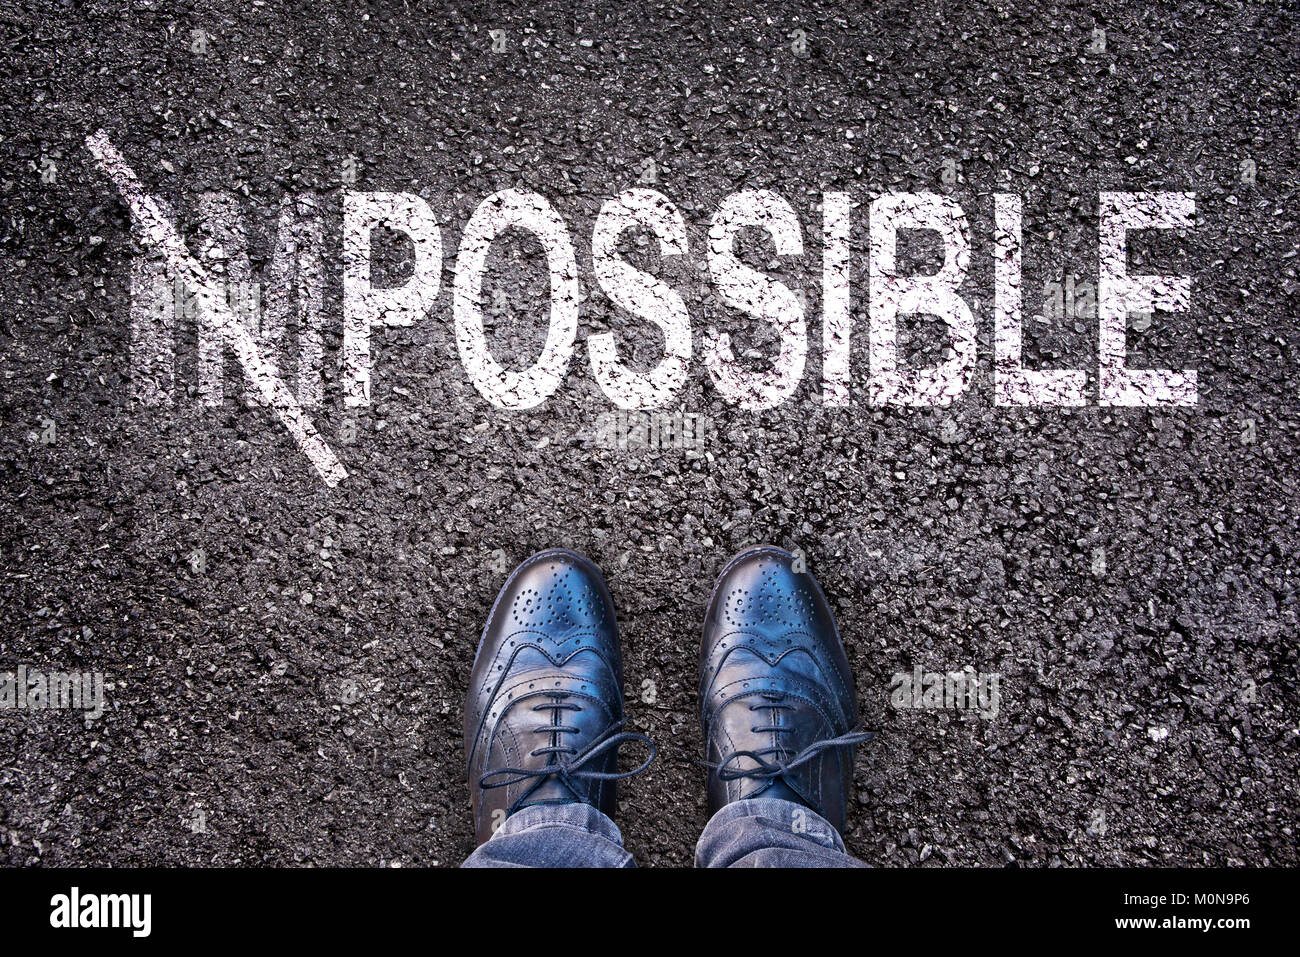 Cambiando la palabra imposible en posible en una carretera de asfalto con pies Foto de stock